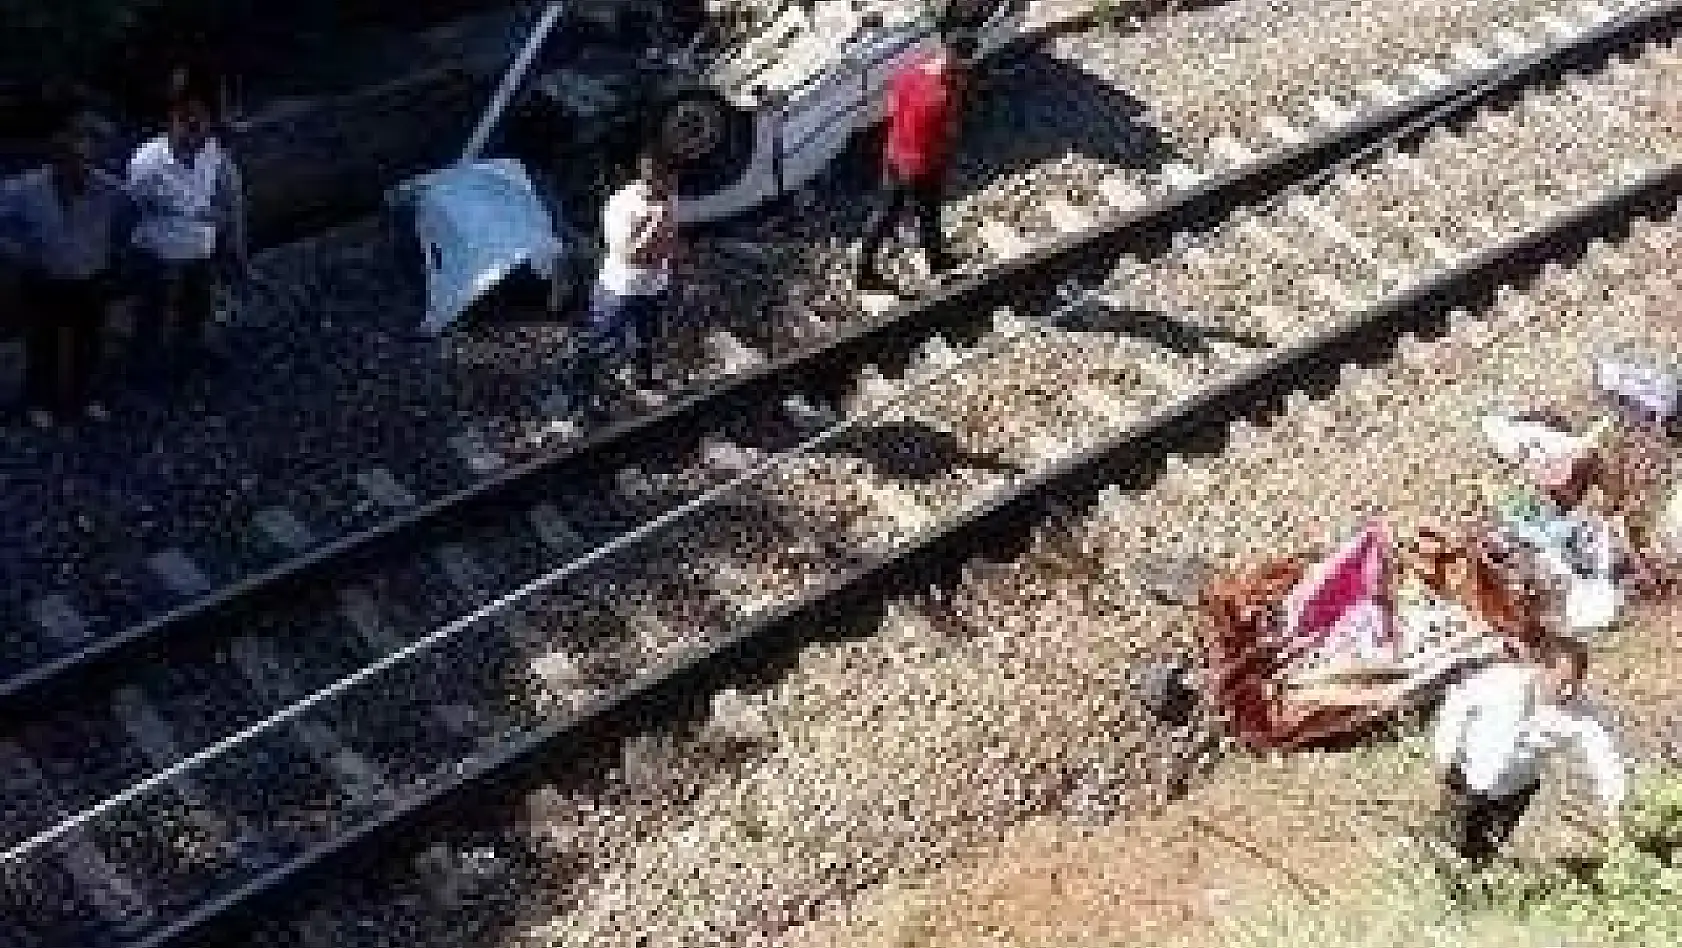  Otomobil köprüden tren yoluna düştü: 1 ölü